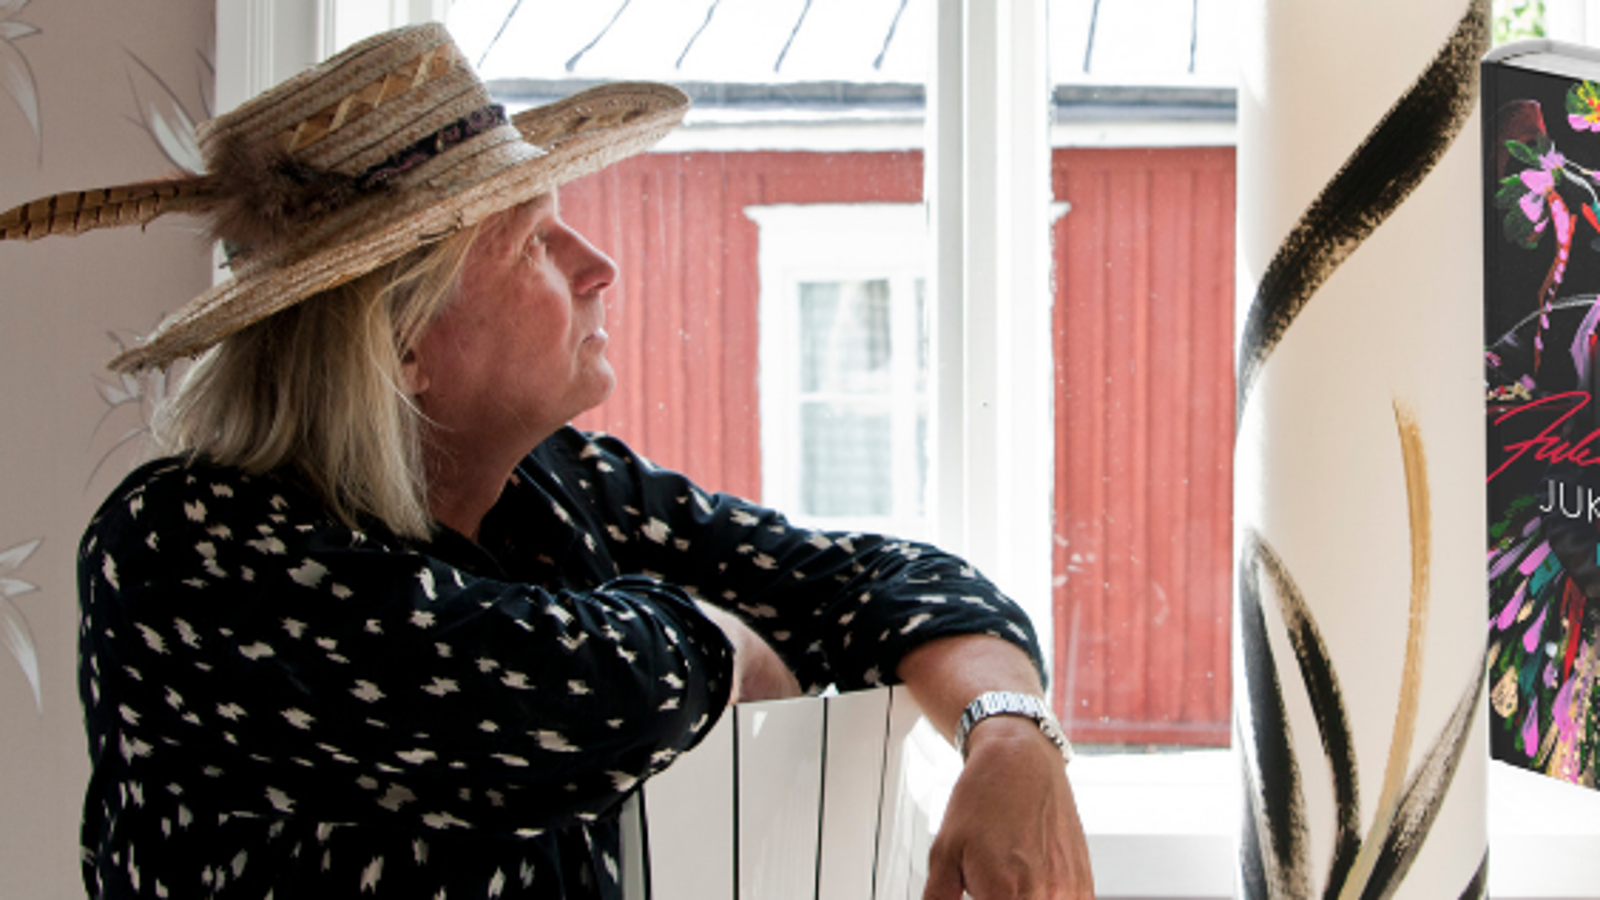 Kuvassa on Jukka Rintala istumassa sivuttain ja katsomassa ikkunasta ulos ja sieltä näkyy puna-valkoinen rakennus.  Rintalalla on lierihattu päässään ja hatussa on sulka.